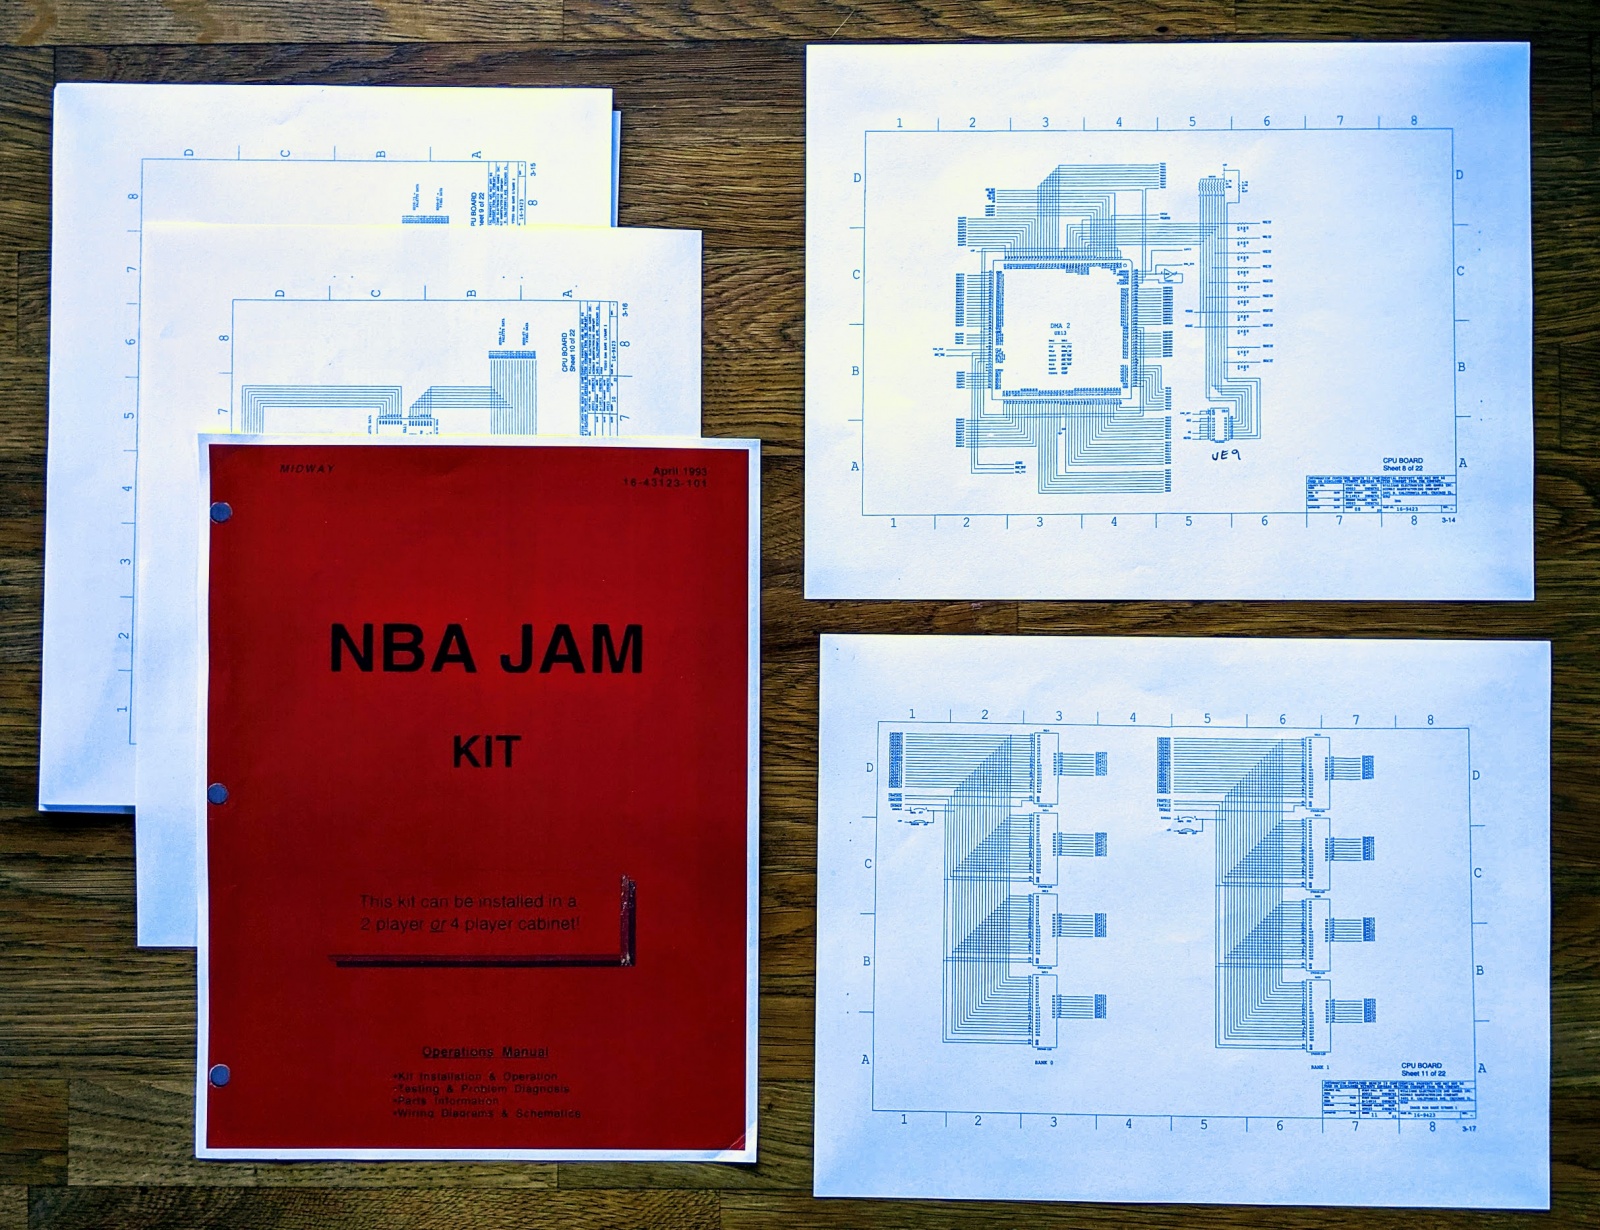 Реверс-инжиниринг аркадного автомата: записываем Майкла Джордана в NBA Jam - 6